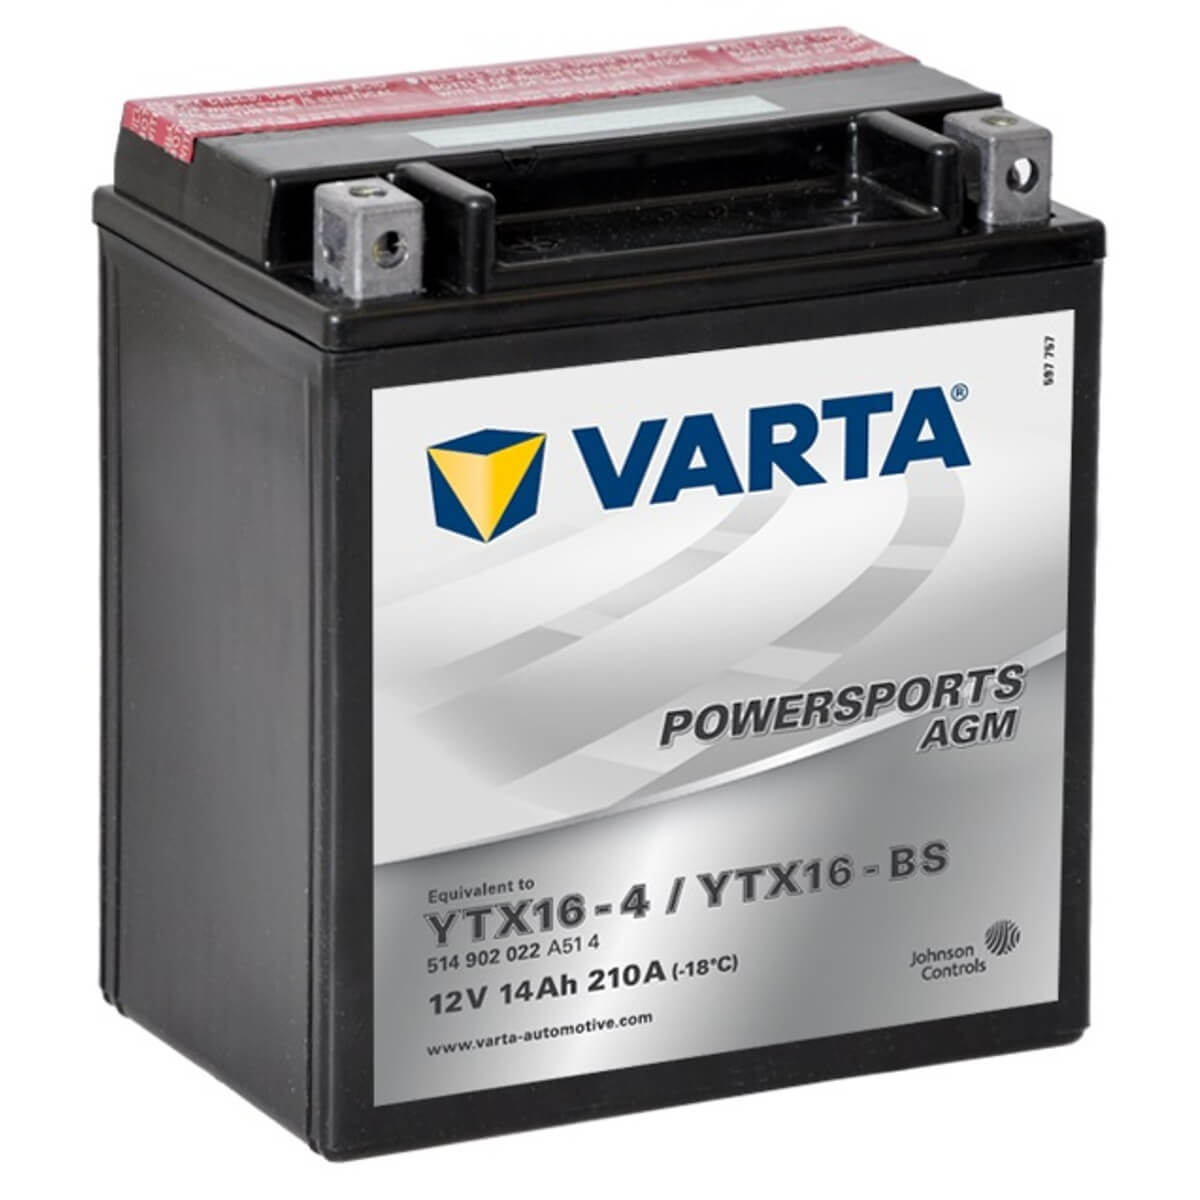 Varta Powersports 514902 AGM 12V 14Ah 210A